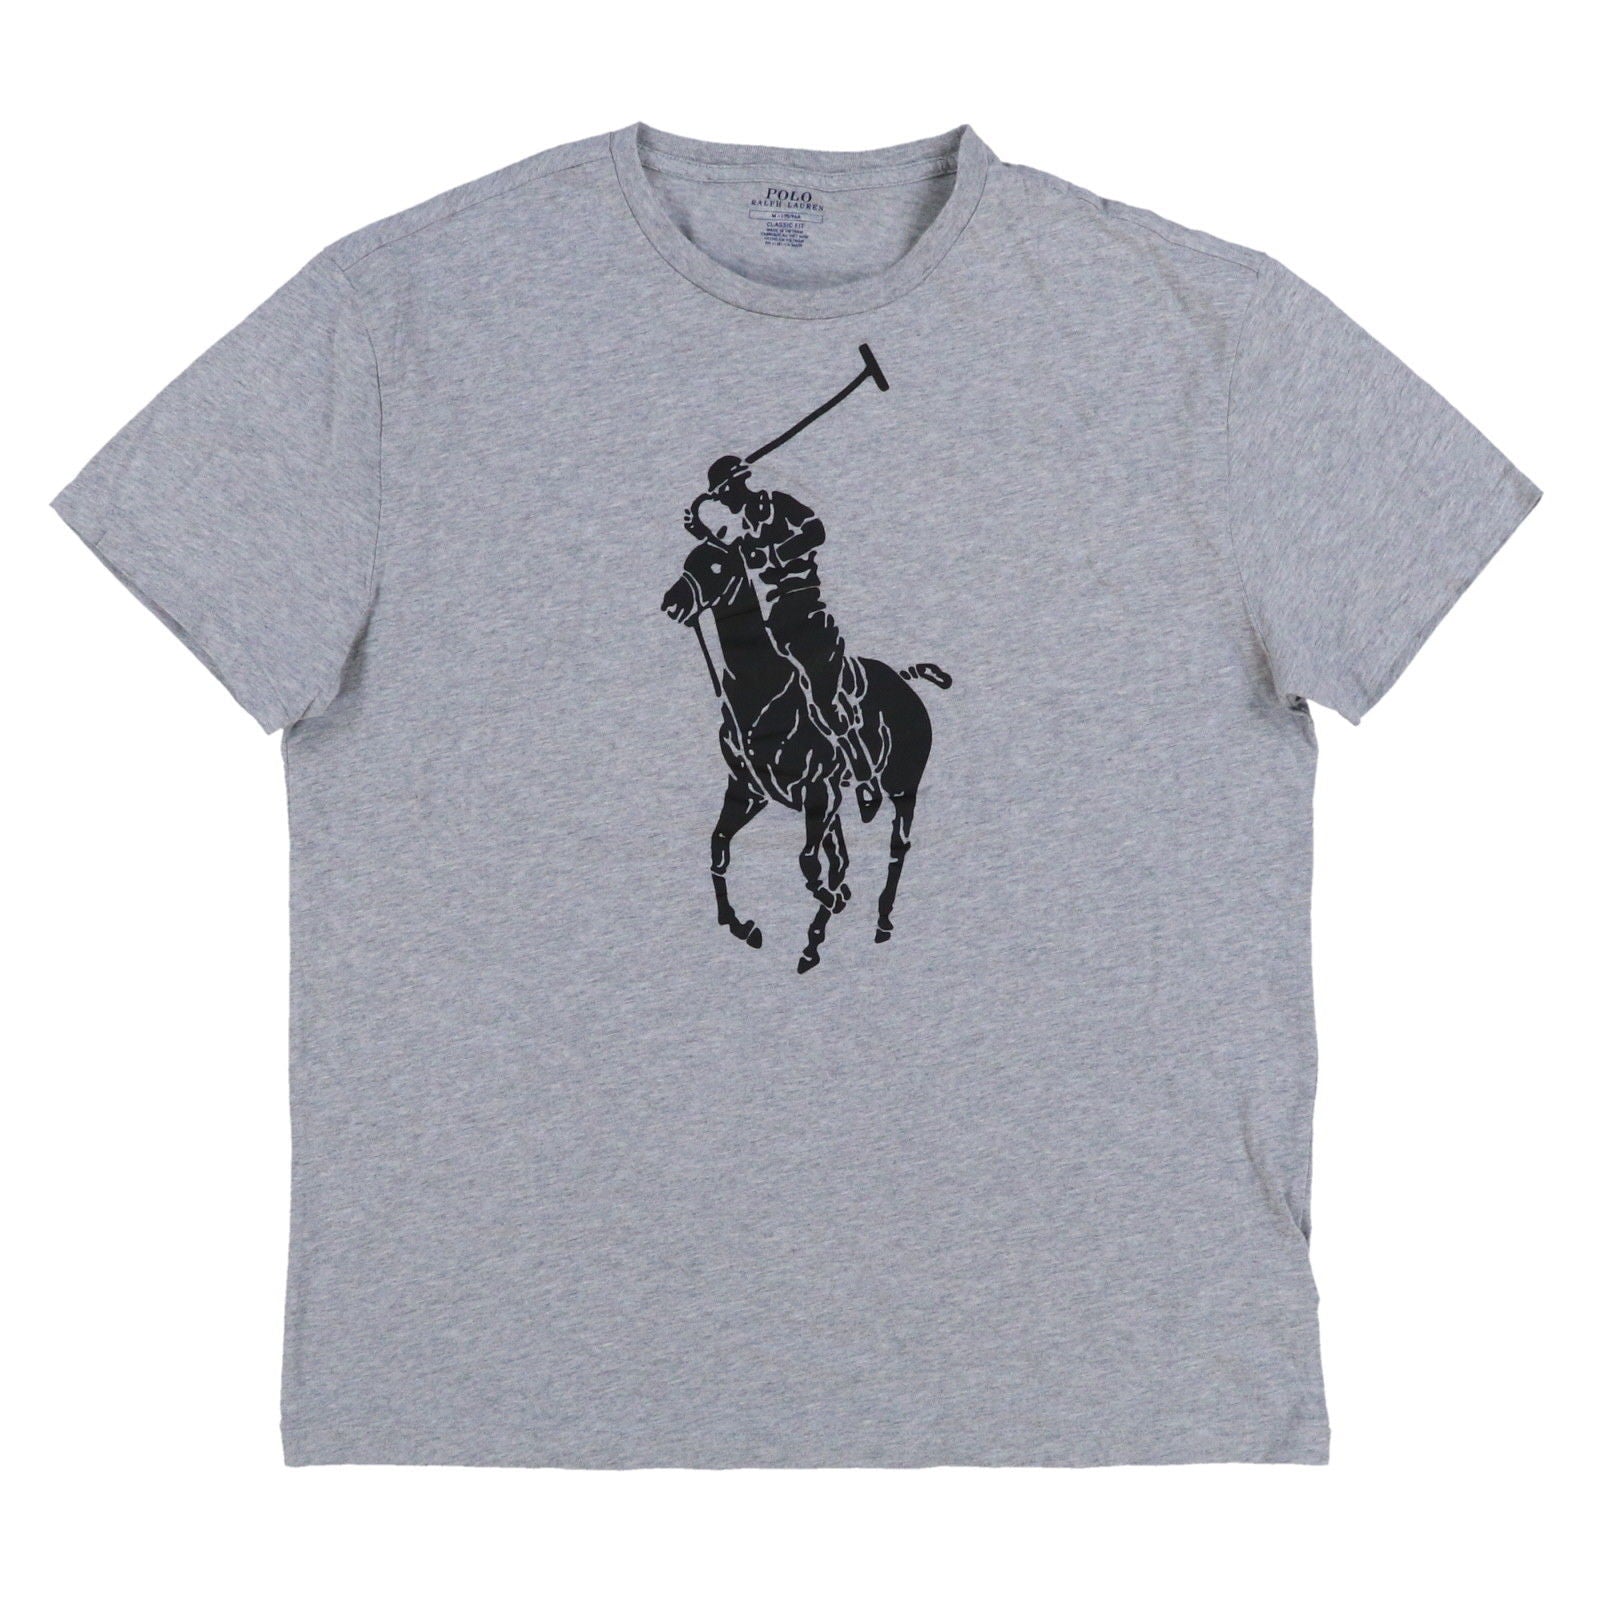 Ralph Lauren Graphic T-Shirt S/S – Esquire Men's Freeport